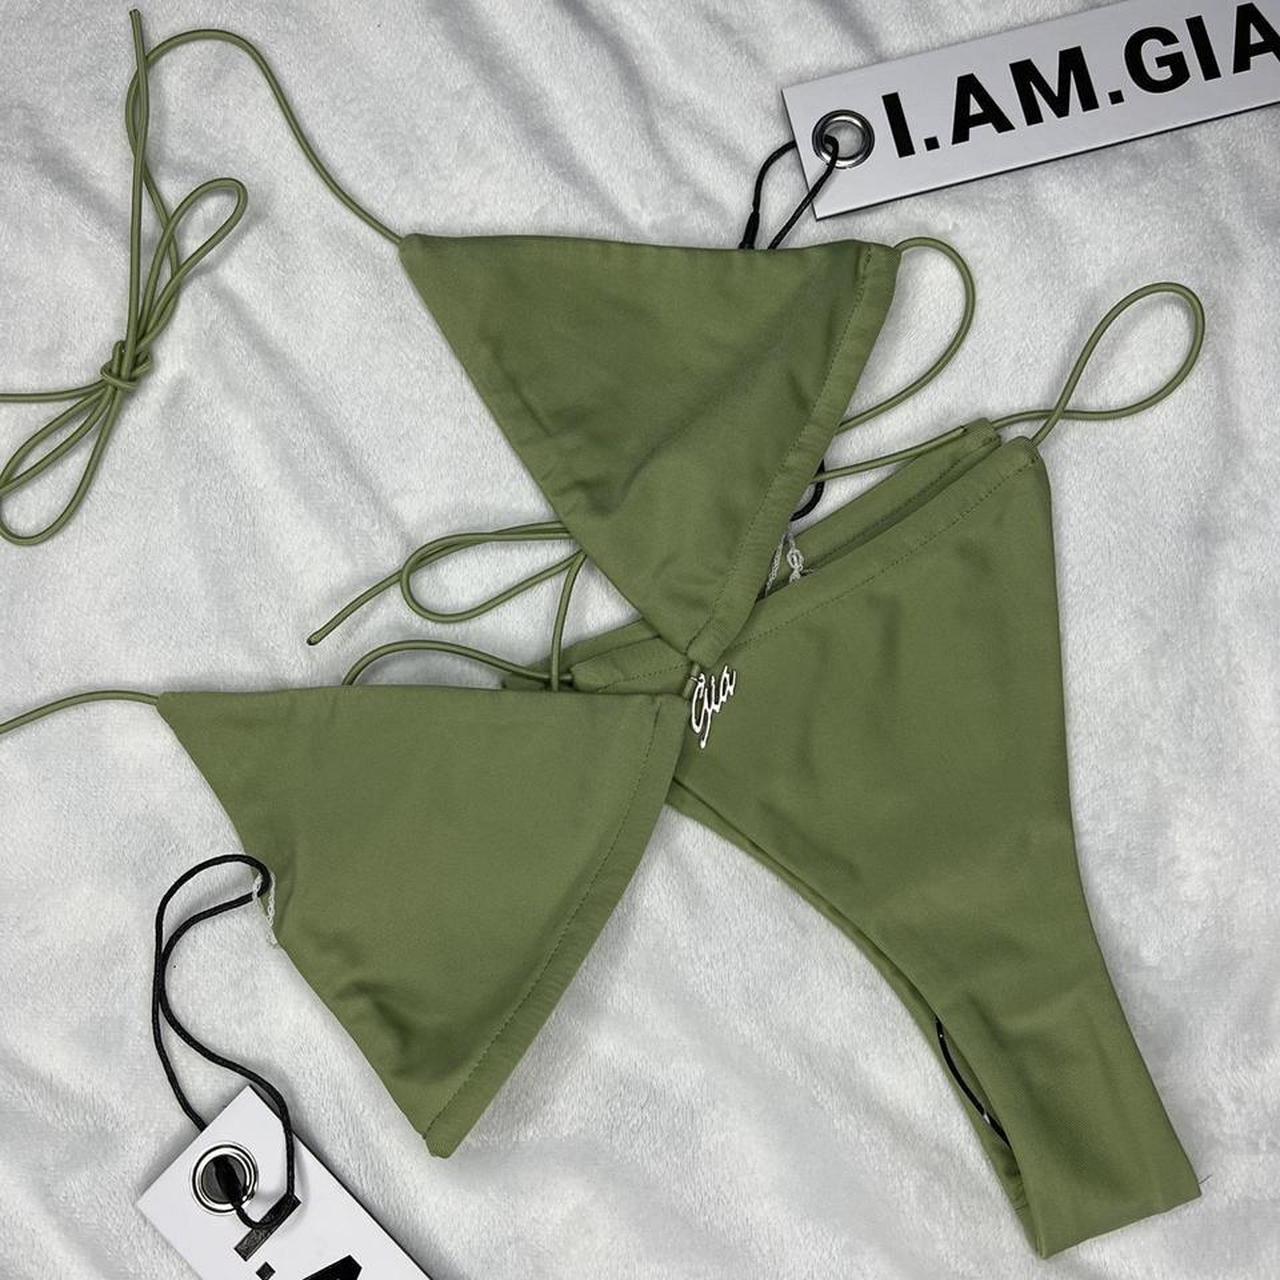 I.AM.GIA Women's Bikinis-and-tankini-sets